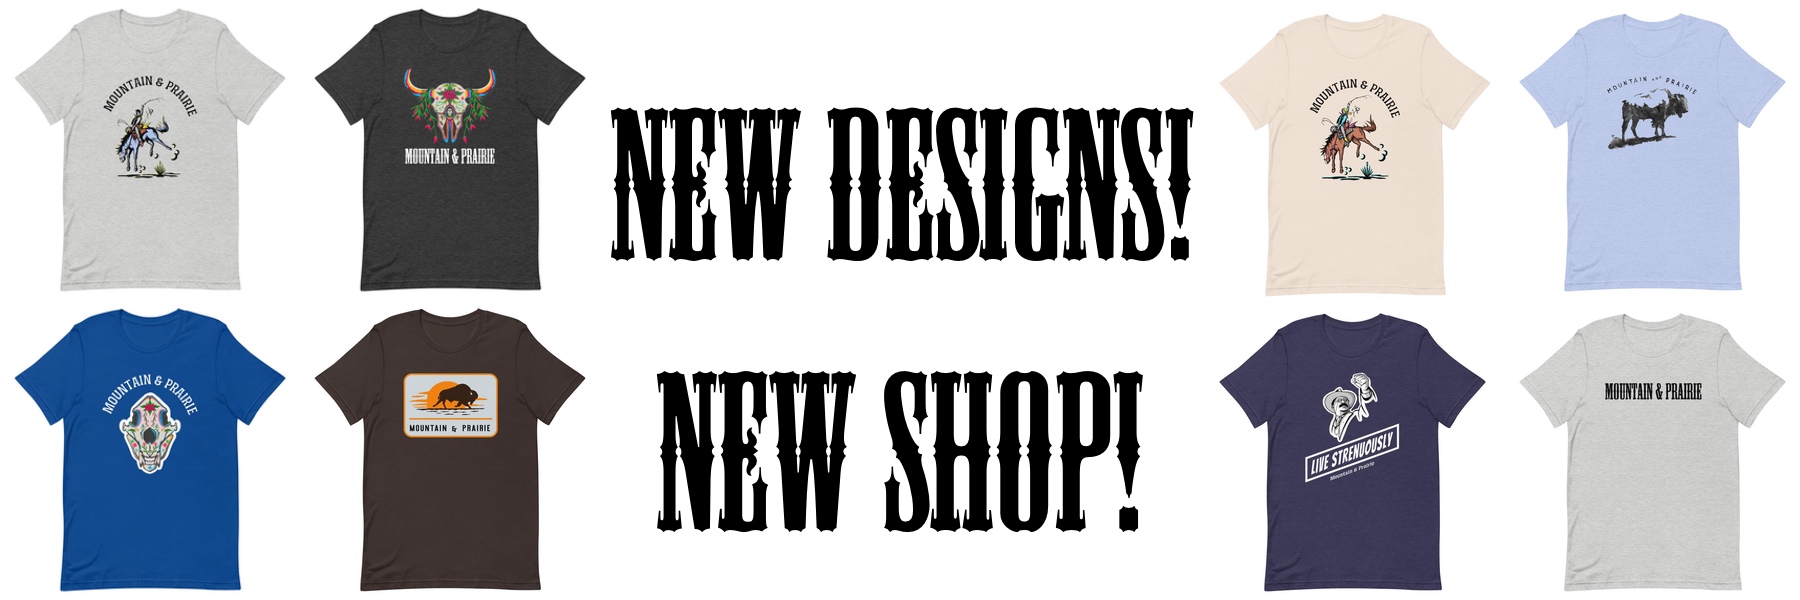 New Designs, New Shop • Mountain & Prairie